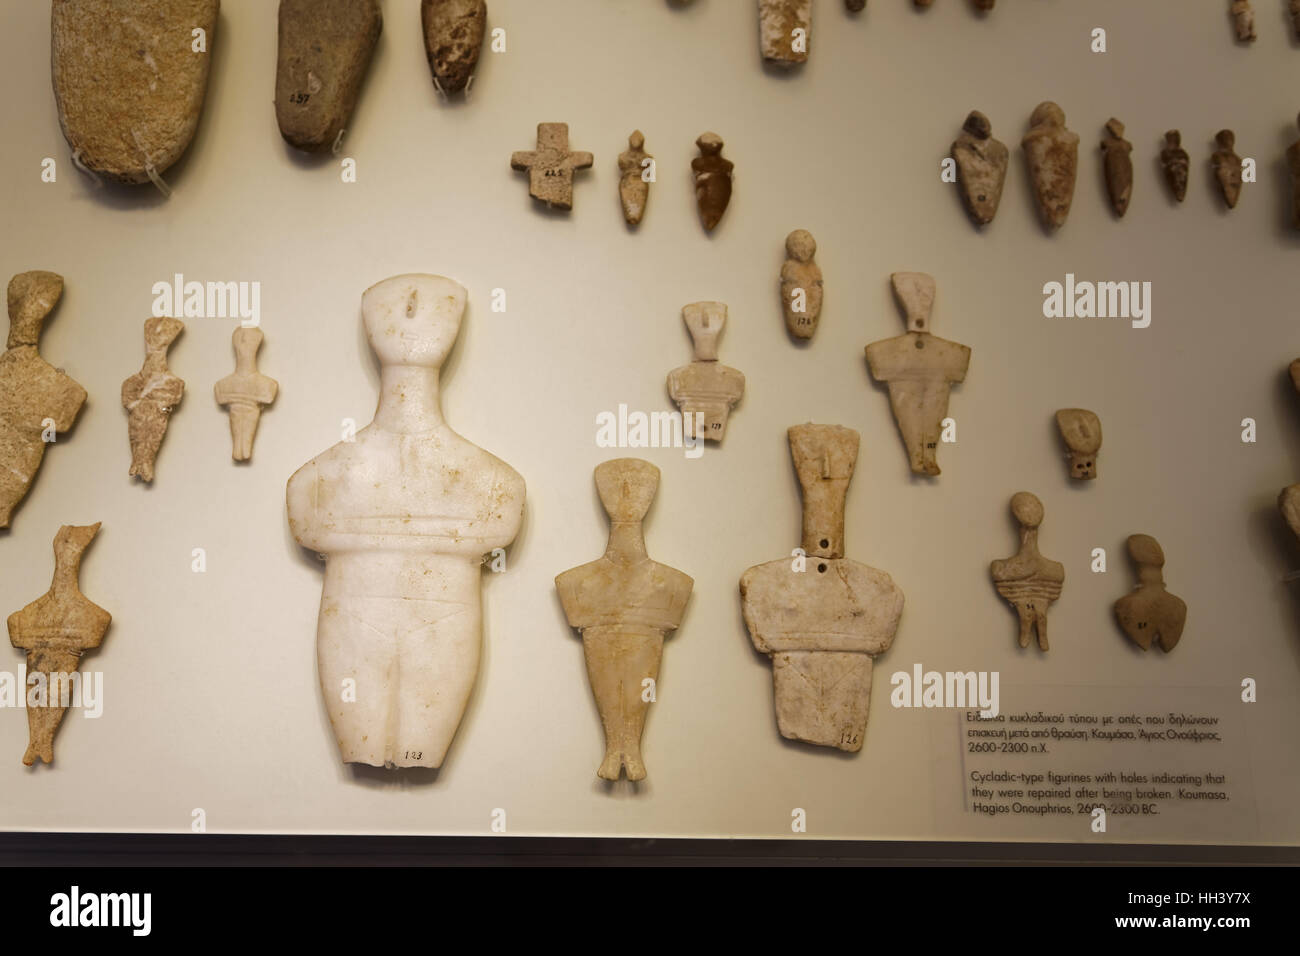 Figurines de type cycladique avec trous indiquant qu'ils ont été remis en état après avoir été rompu.Koumasa,Hagios Onouphrios,2600-2300 BC. Banque D'Images